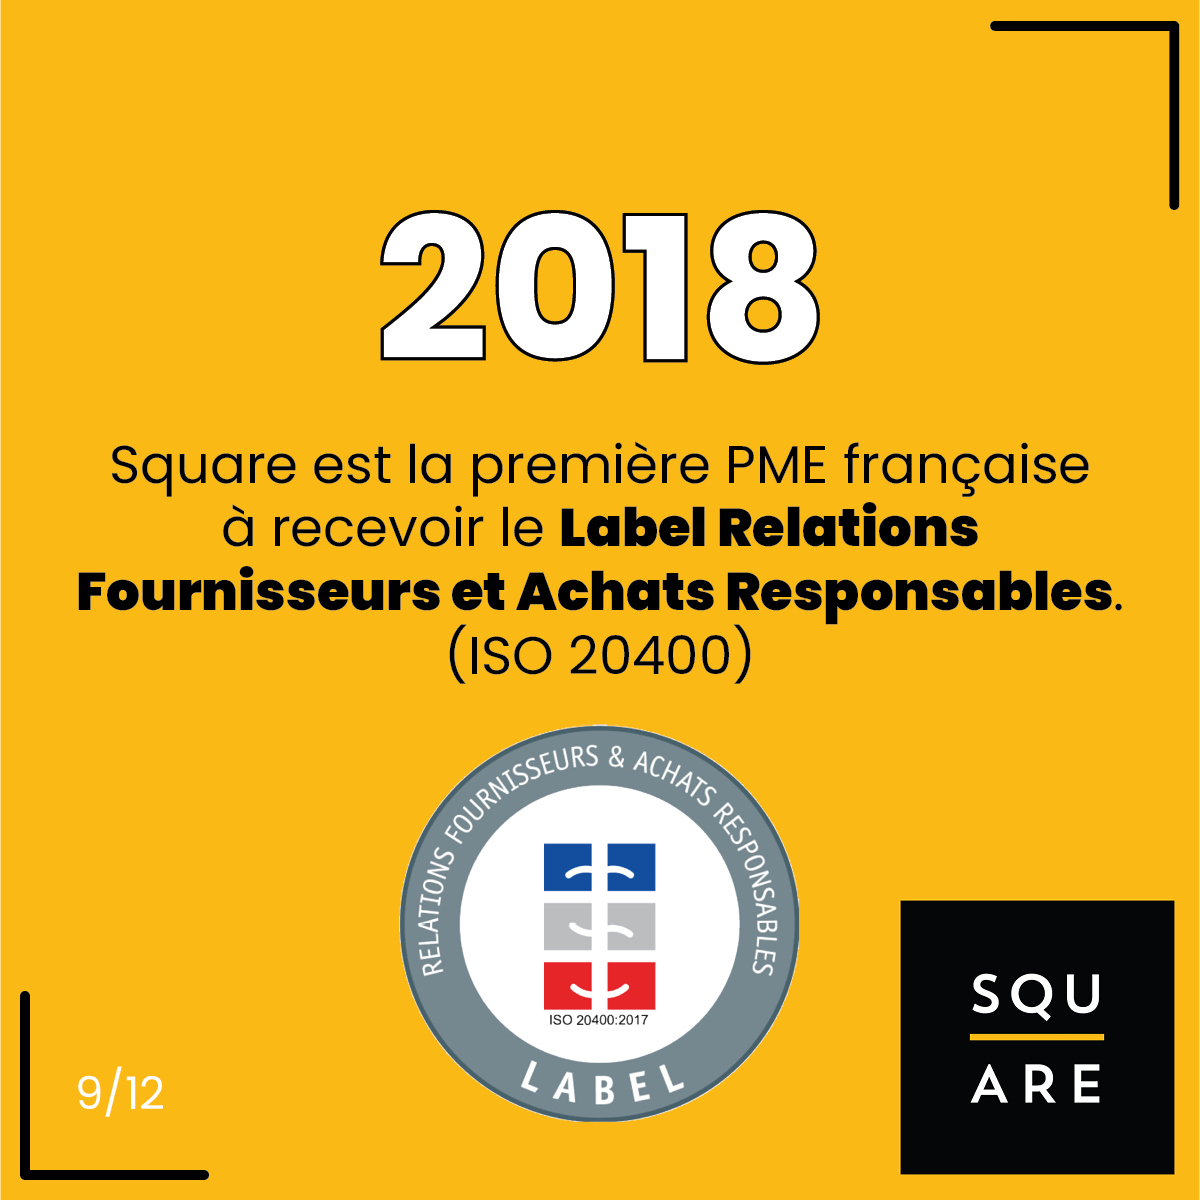 2018, Square est la première PME française à recevoir le Label Relations Fournisseurs et Achats Responsables. (ISO 20400)